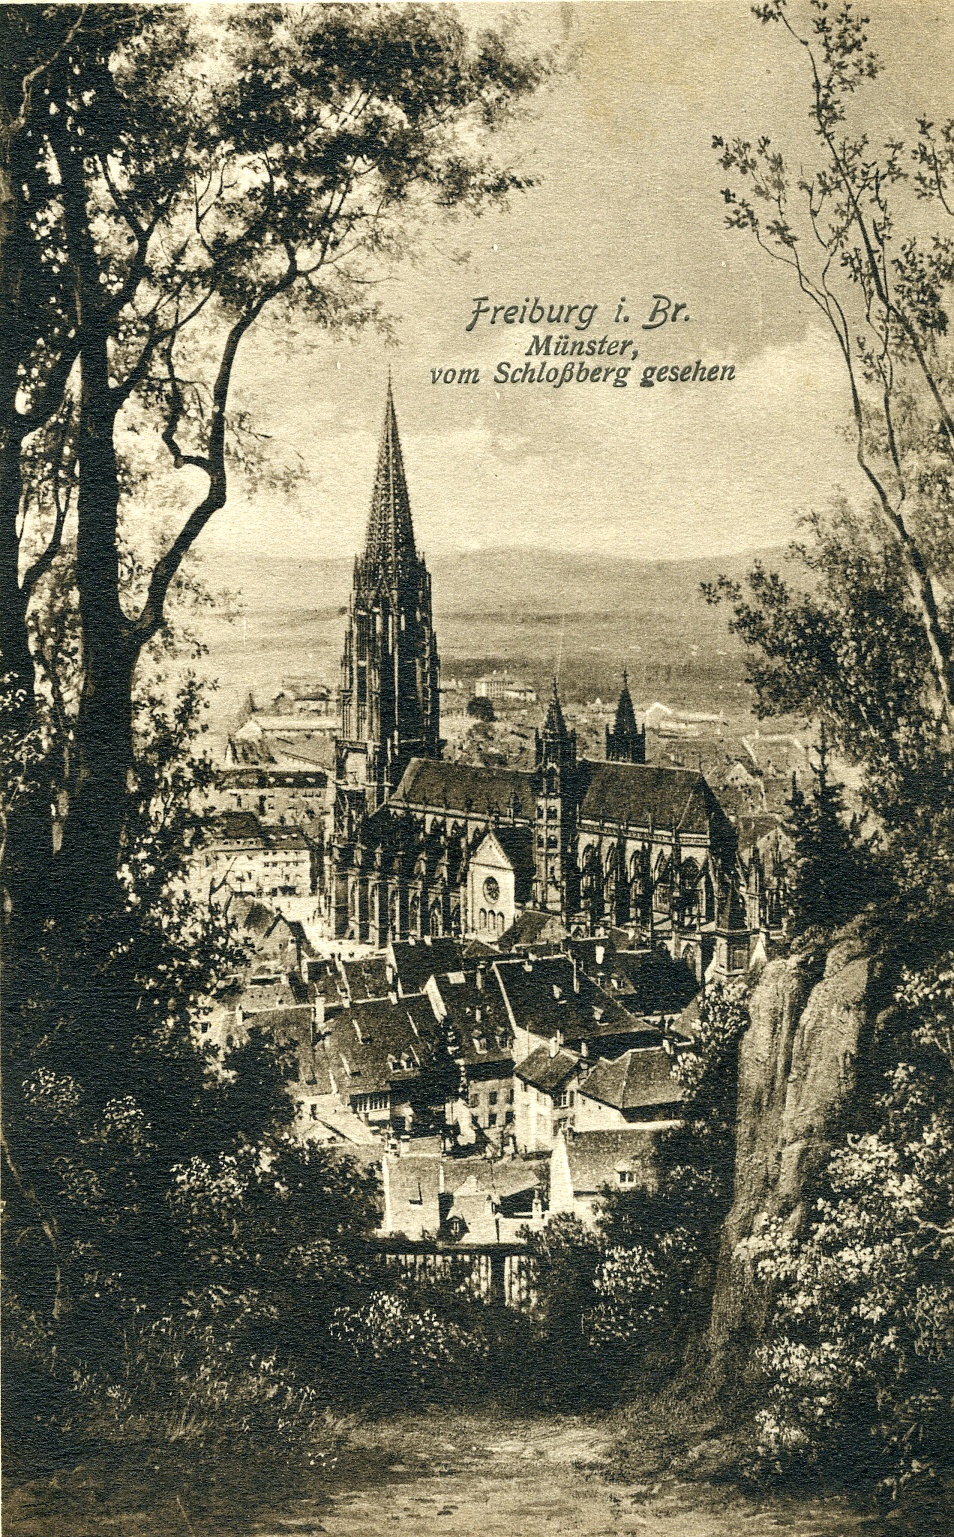 Feldpostkarte aus Freiburg im Breisgau 1915 (Historisches Museum der Pfalz, Speyer CC BY)